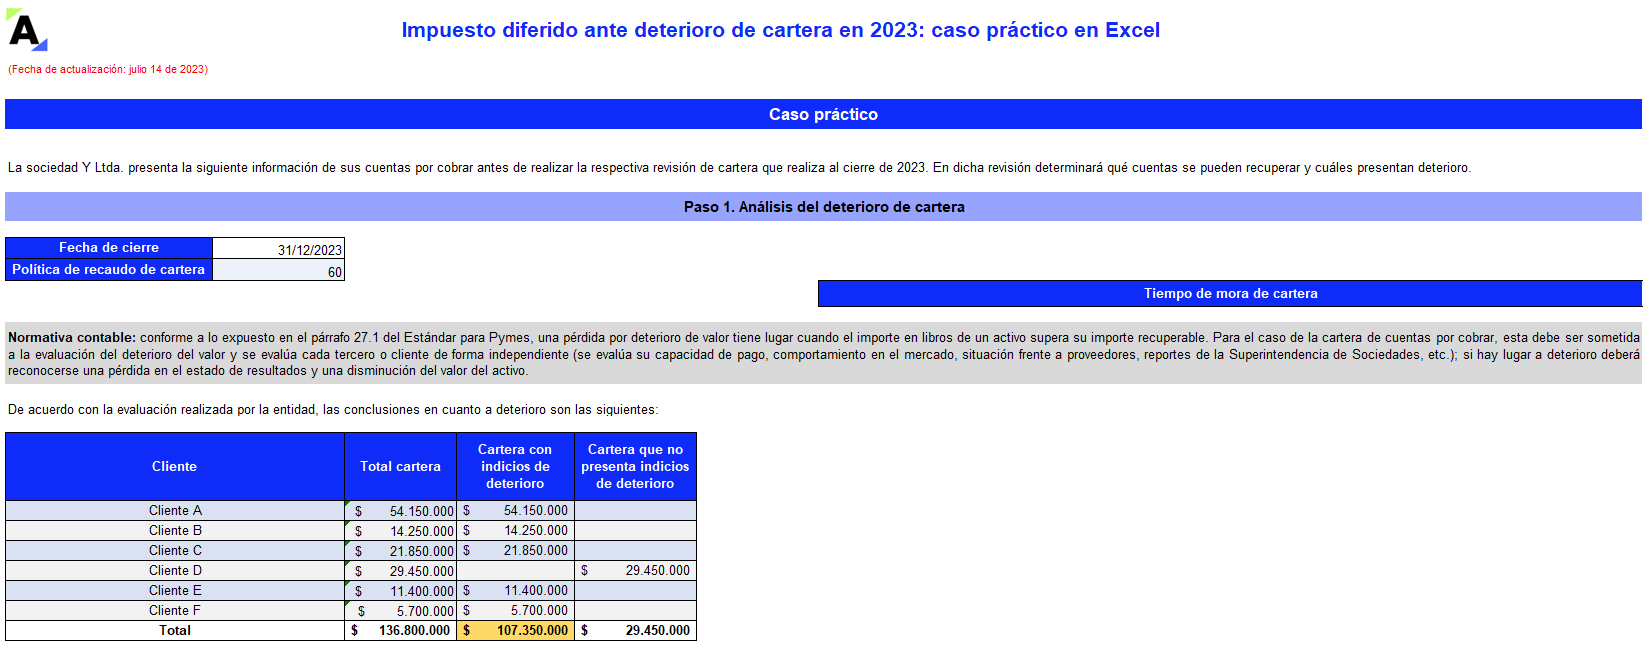 Impuesto diferido ante deterioro de cartera en 2023: caso práctico en Excel